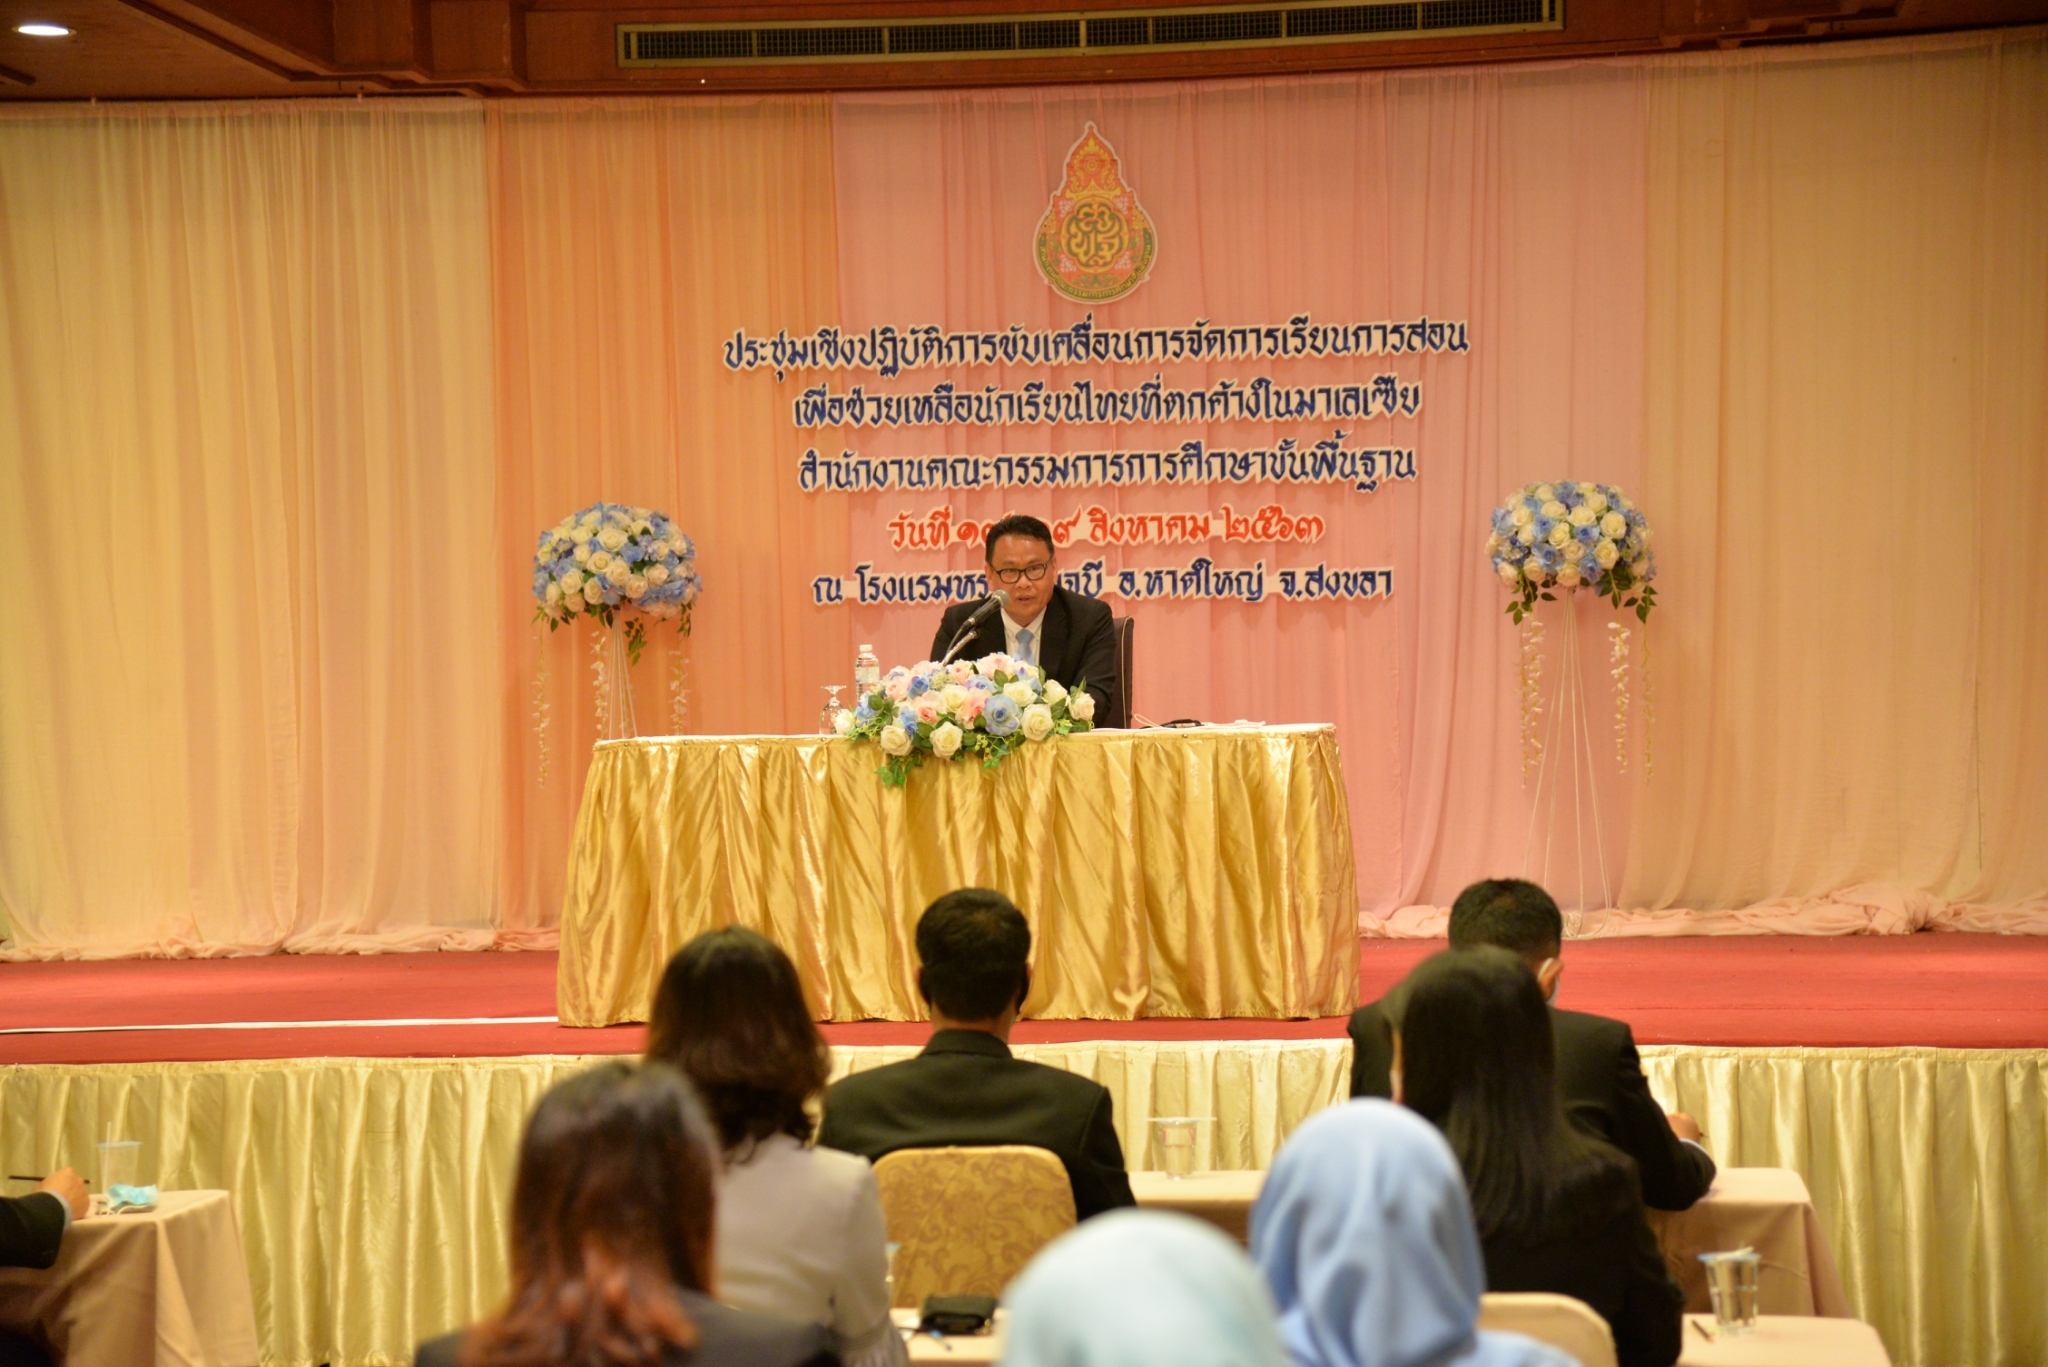  คณะกรรมการการศึกษาขั้นพื้นฐาน จัดประชุมเตรียมแผนช่วยเหลือนักเรียนไทยของสงขลาตกค้างในมาเลเซีย